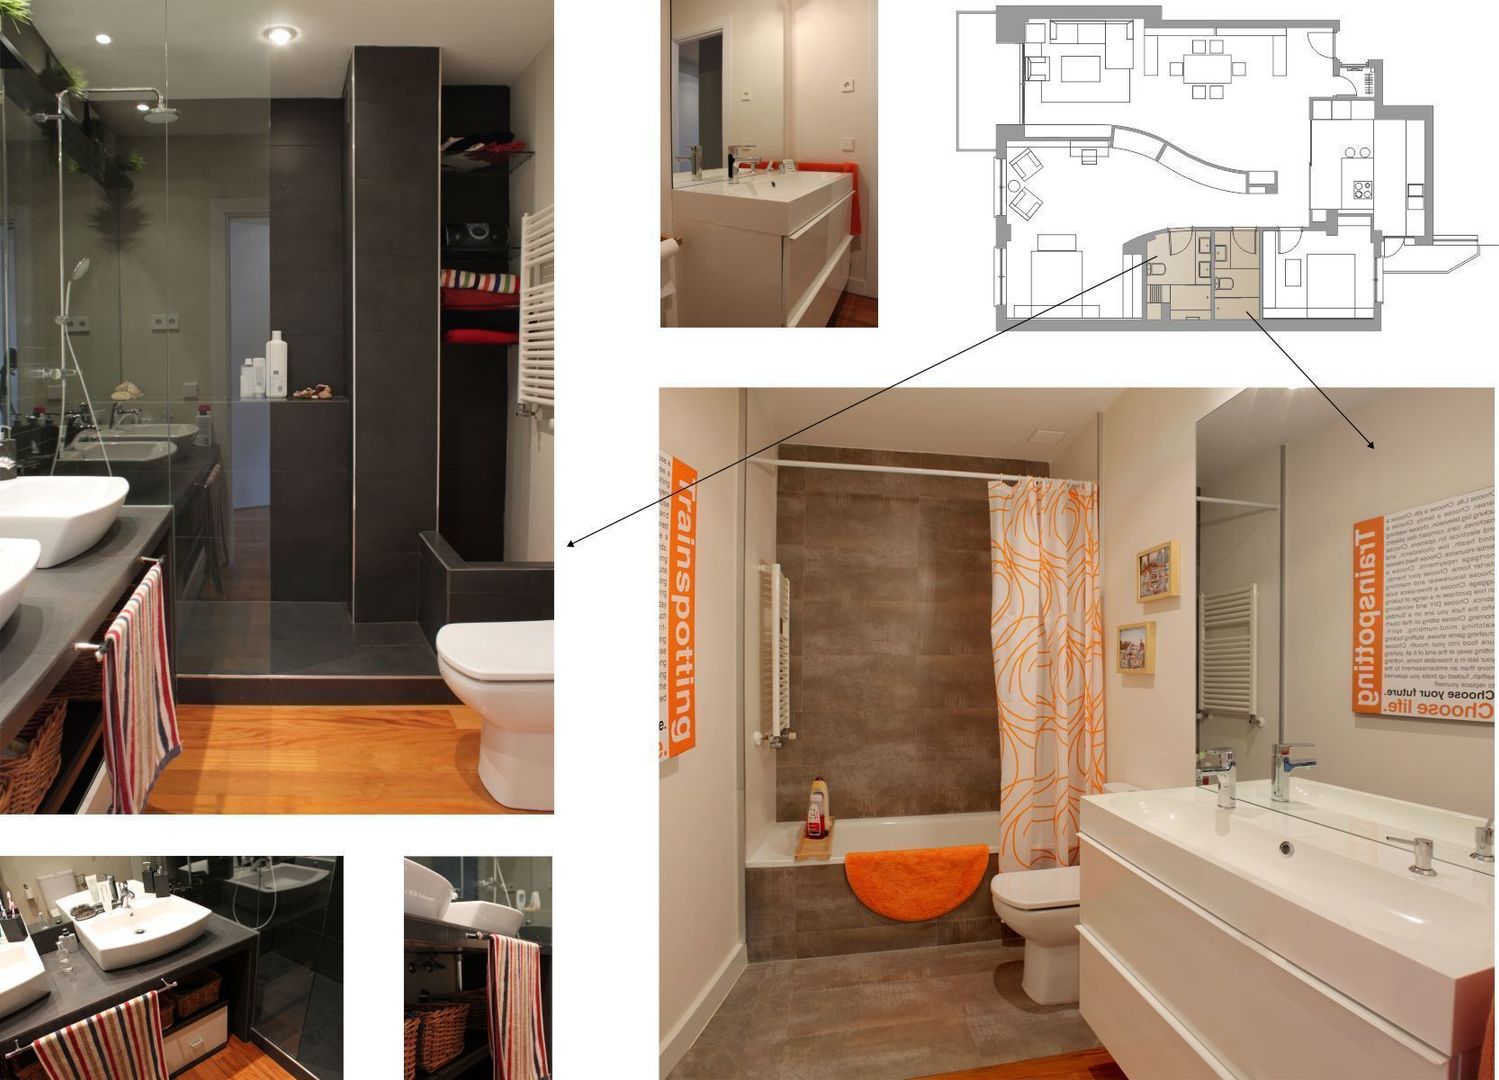 baños elementos interiorismo y diseño Baños de estilo moderno Mueble,Propiedad,Edificio,Arreglo de tubería,Hundir,Grifo,naranja,Baño,Madera,Diseño de interiores